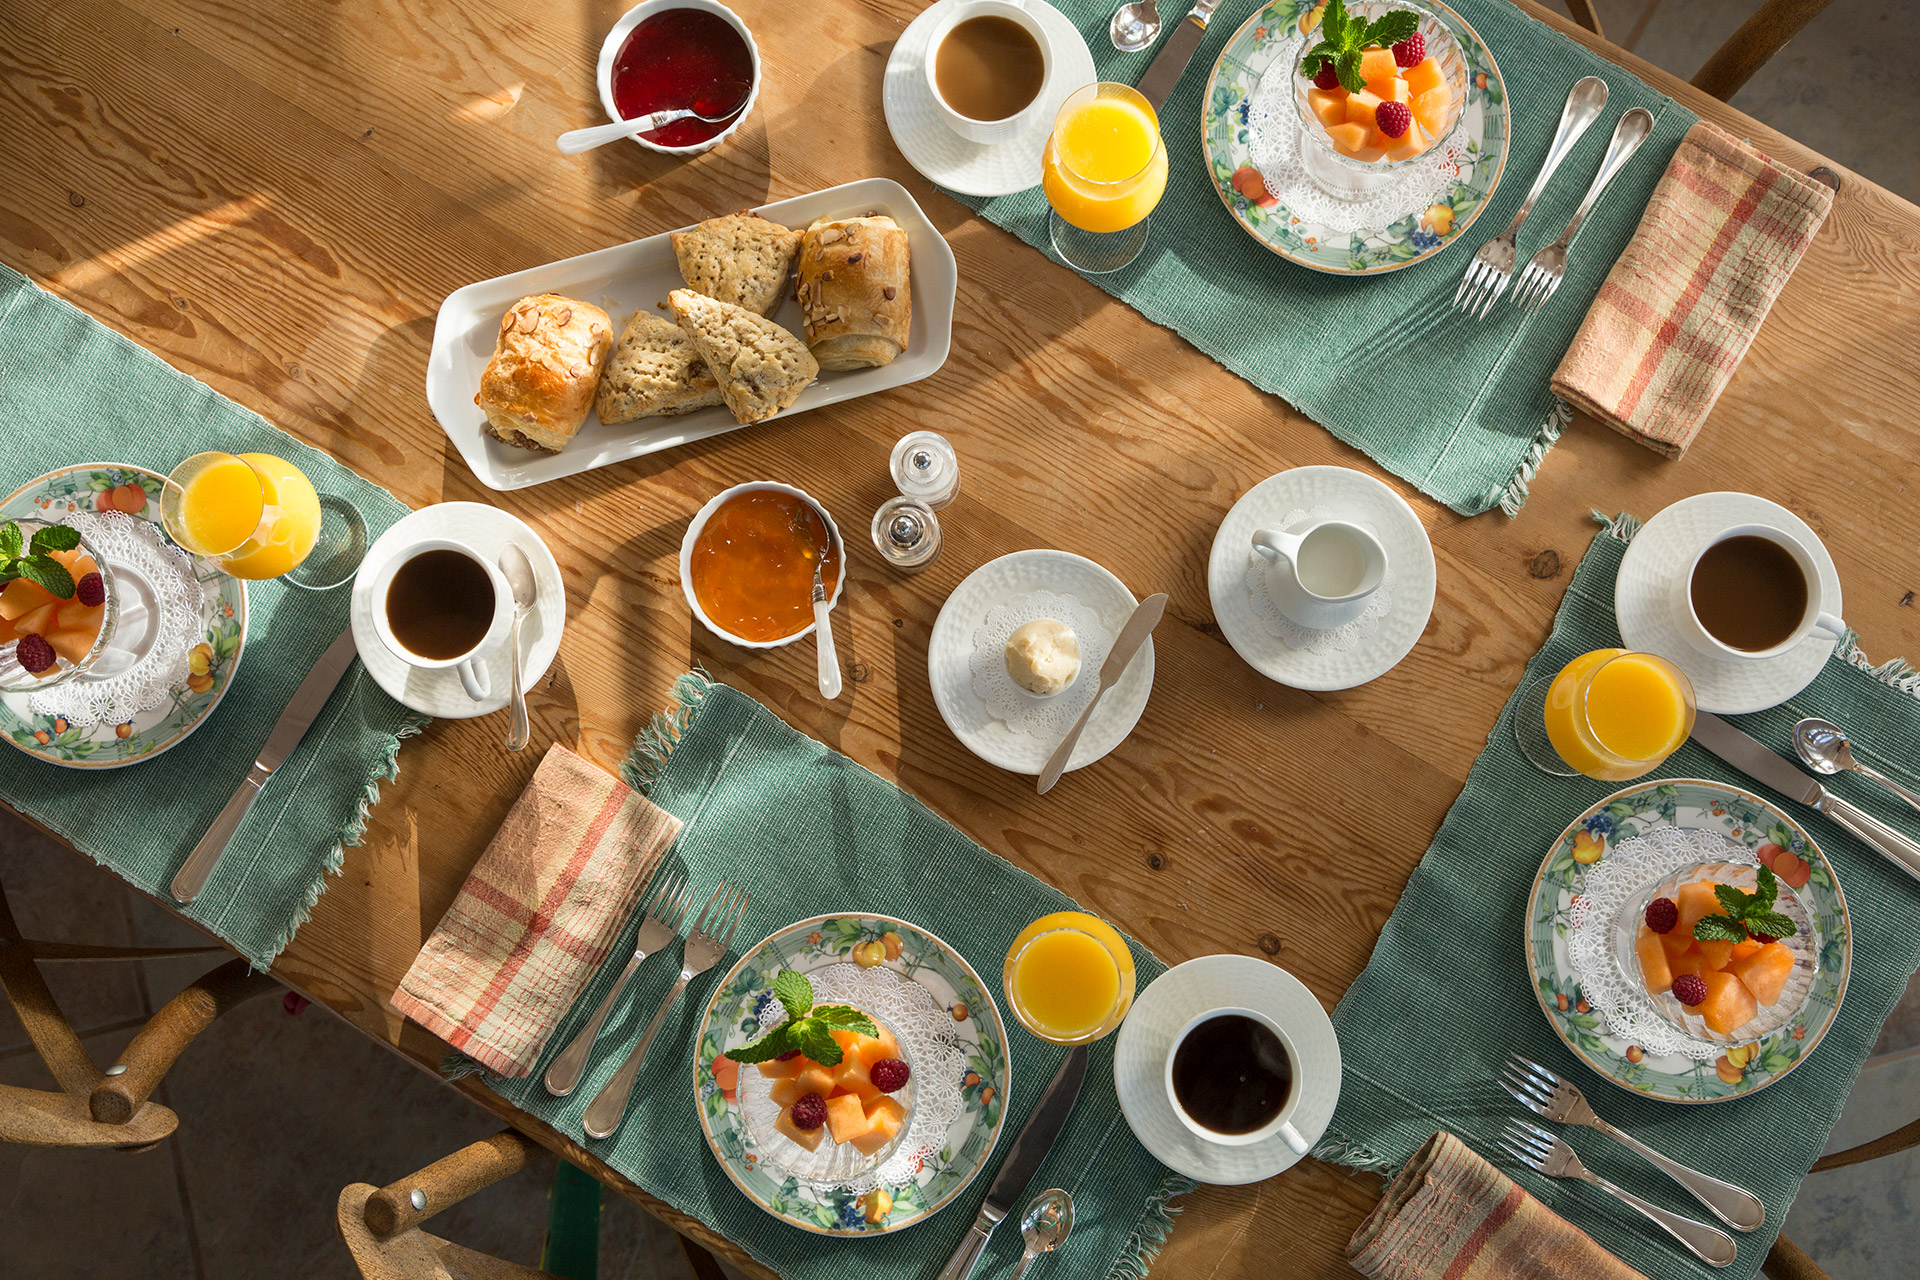 Se afirma que el desayuno es la comida más importante, pero eso no significaría que su consumo abundante ayuda a bajar de peso al final del día (Getty Images)